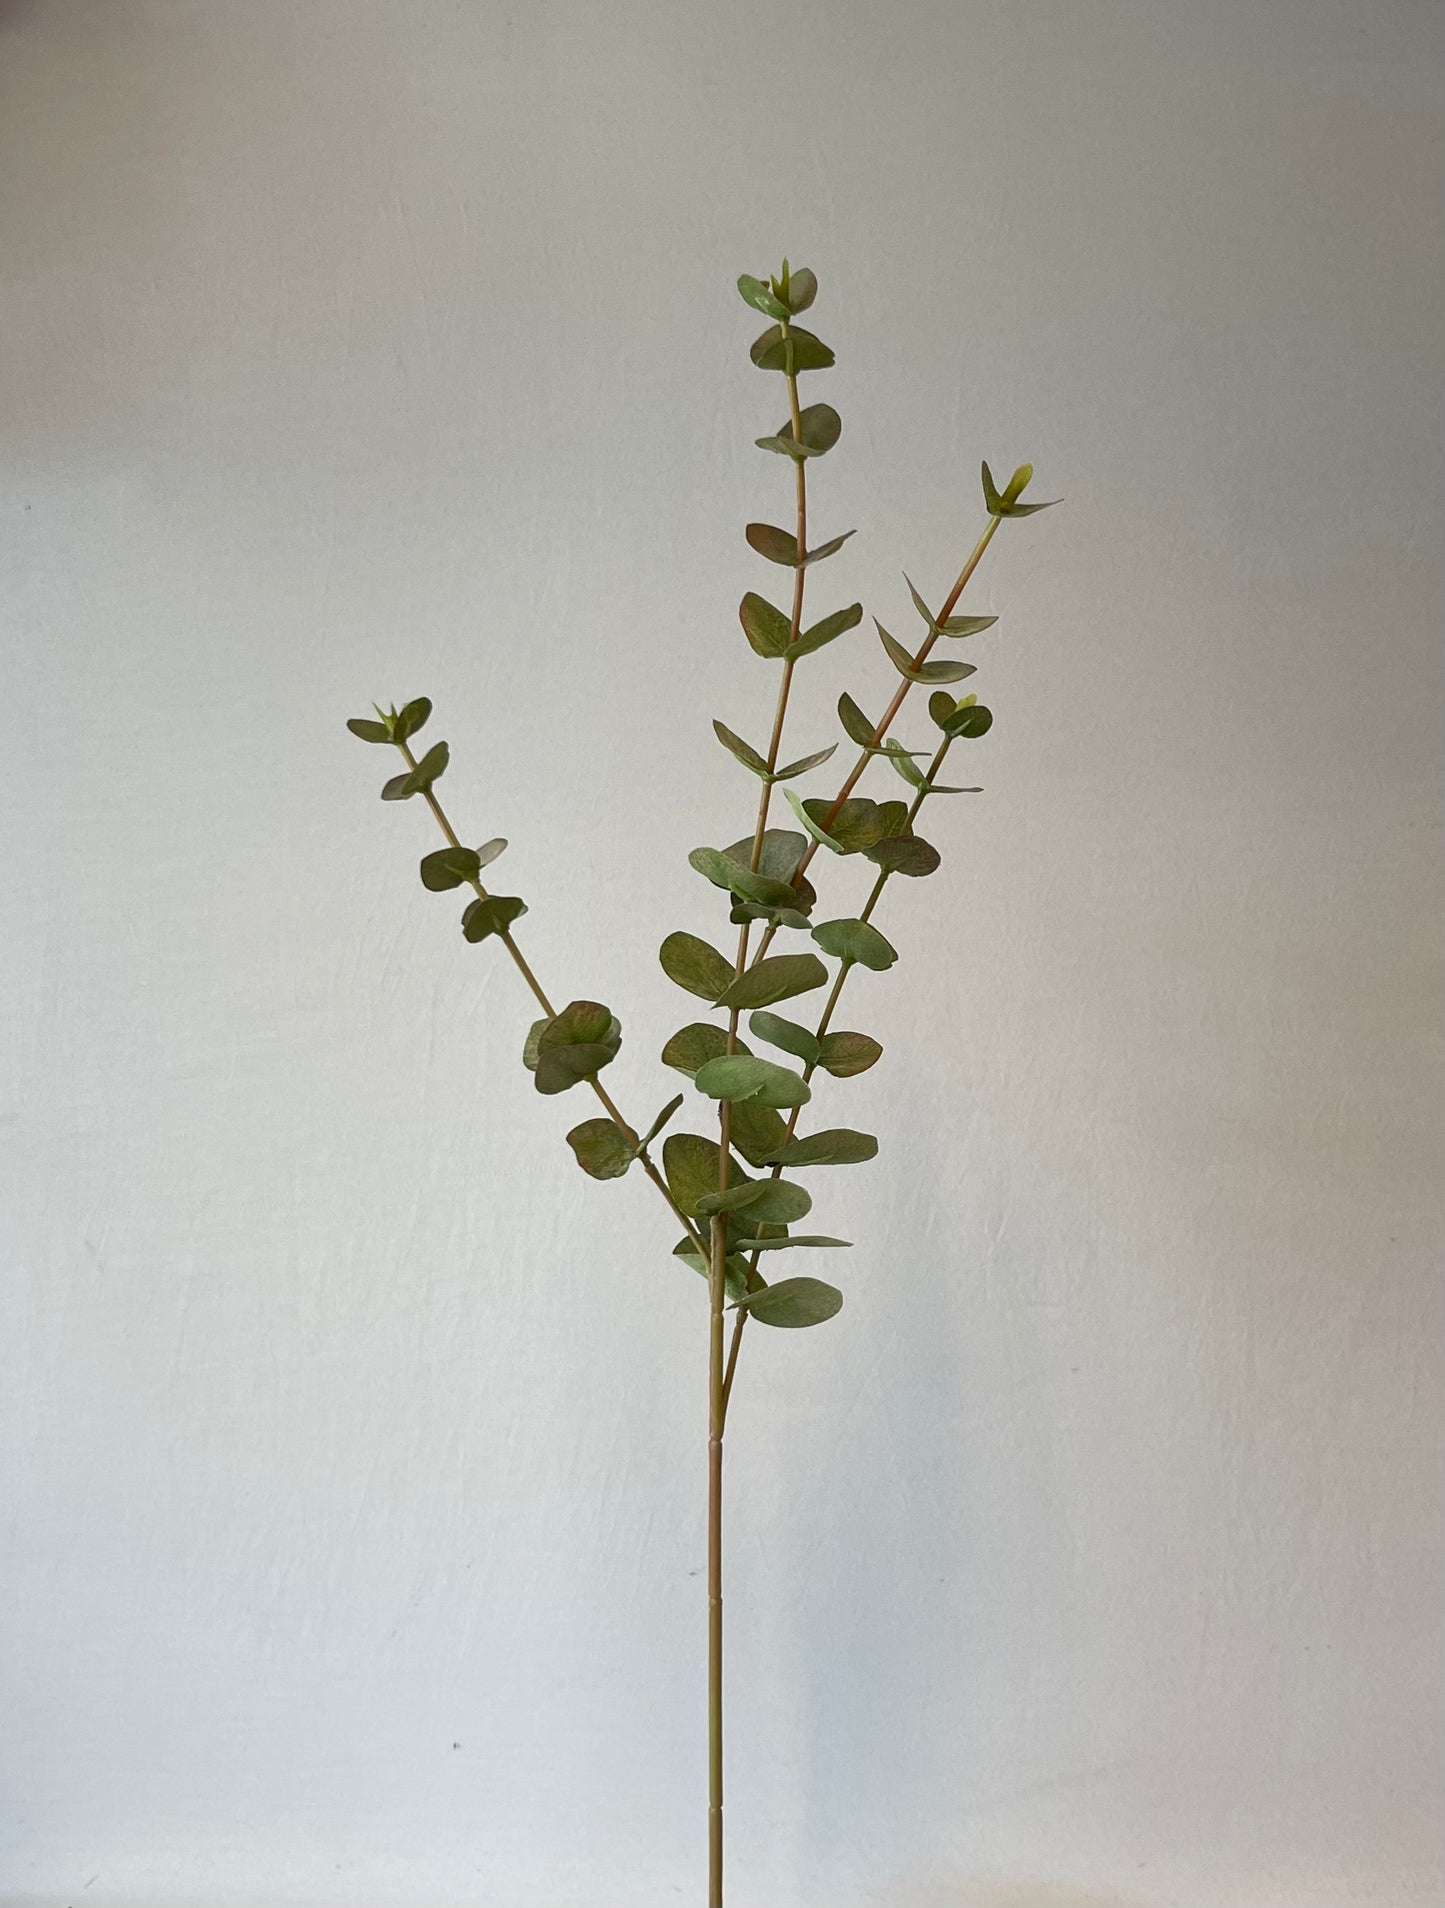 Green Eucalyptus Silver Dollar Single Stem Artificial Flowers Faux Flowers